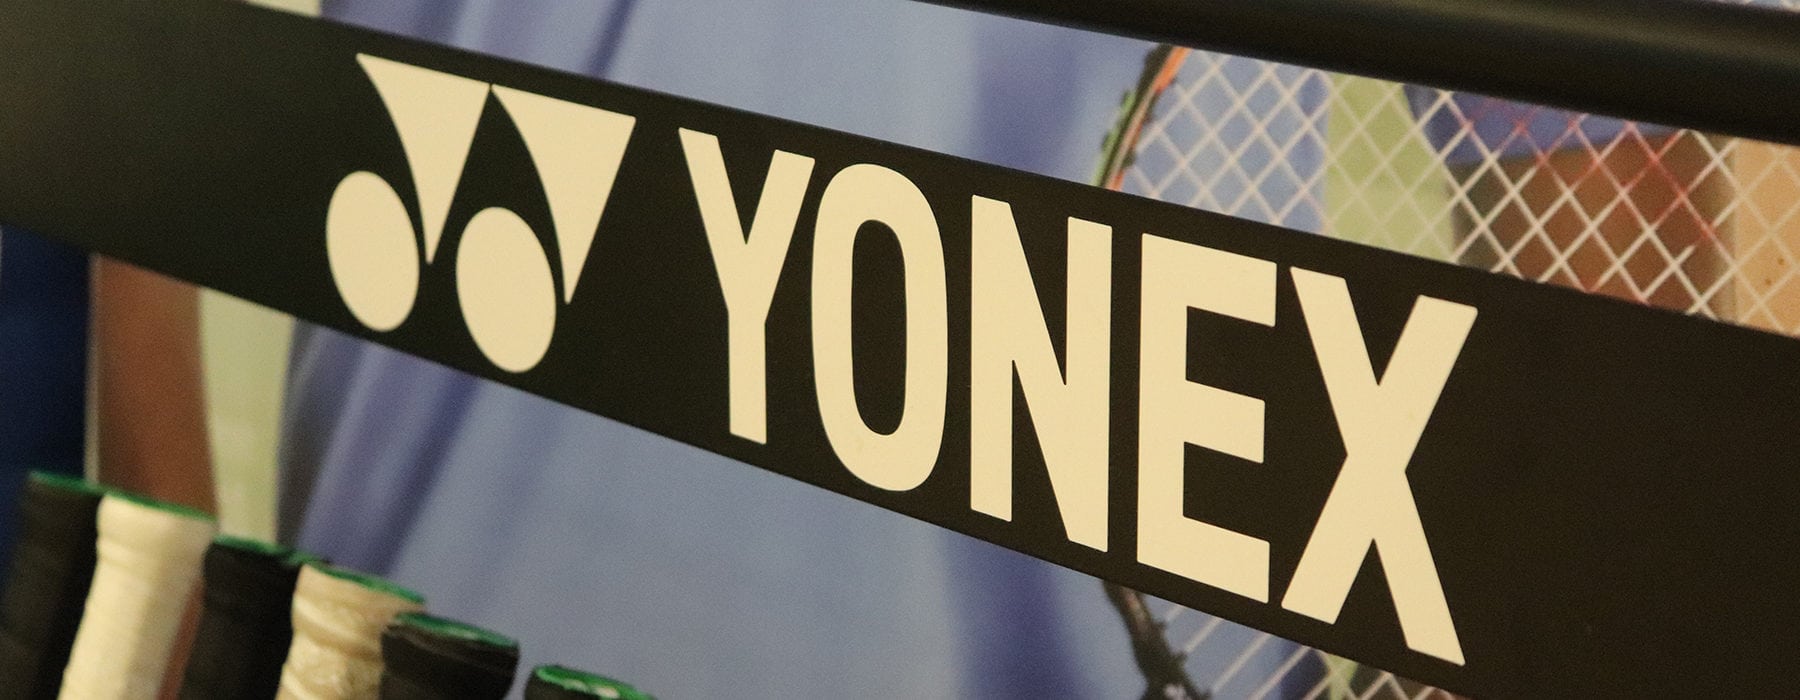 Yonex to visit Surrey Sports Park